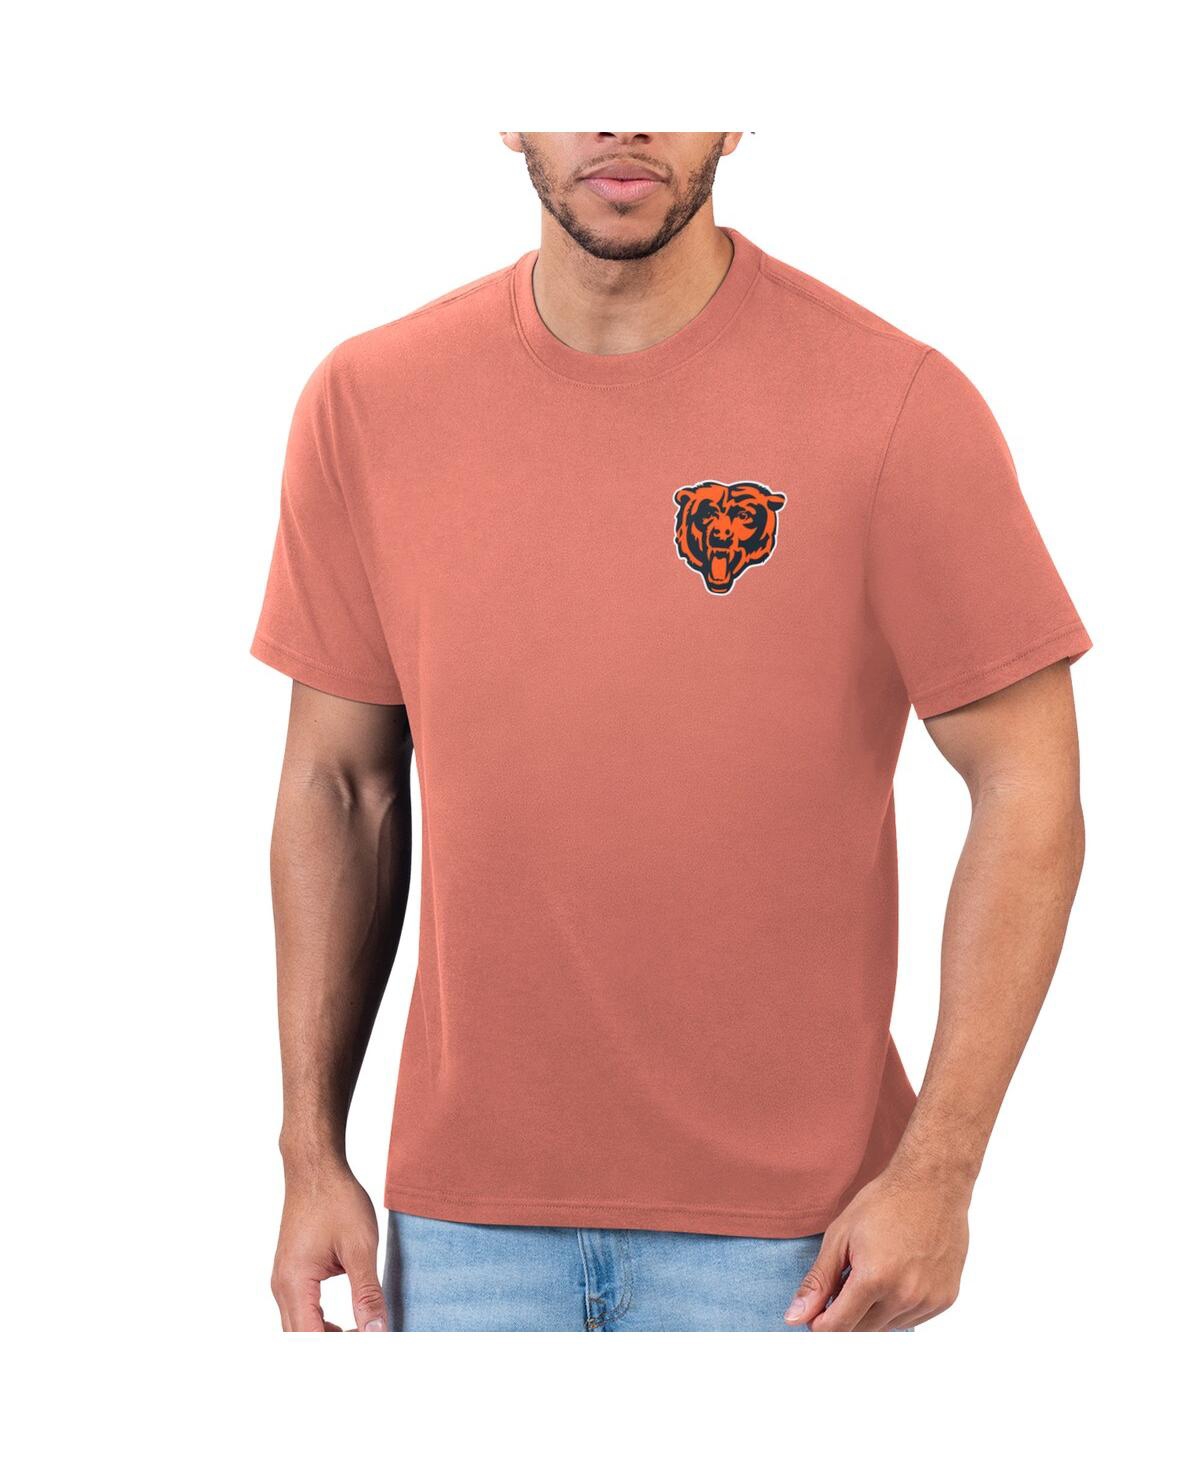 Shop Margaritaville Men's Orange Chicago Bears T-shirt